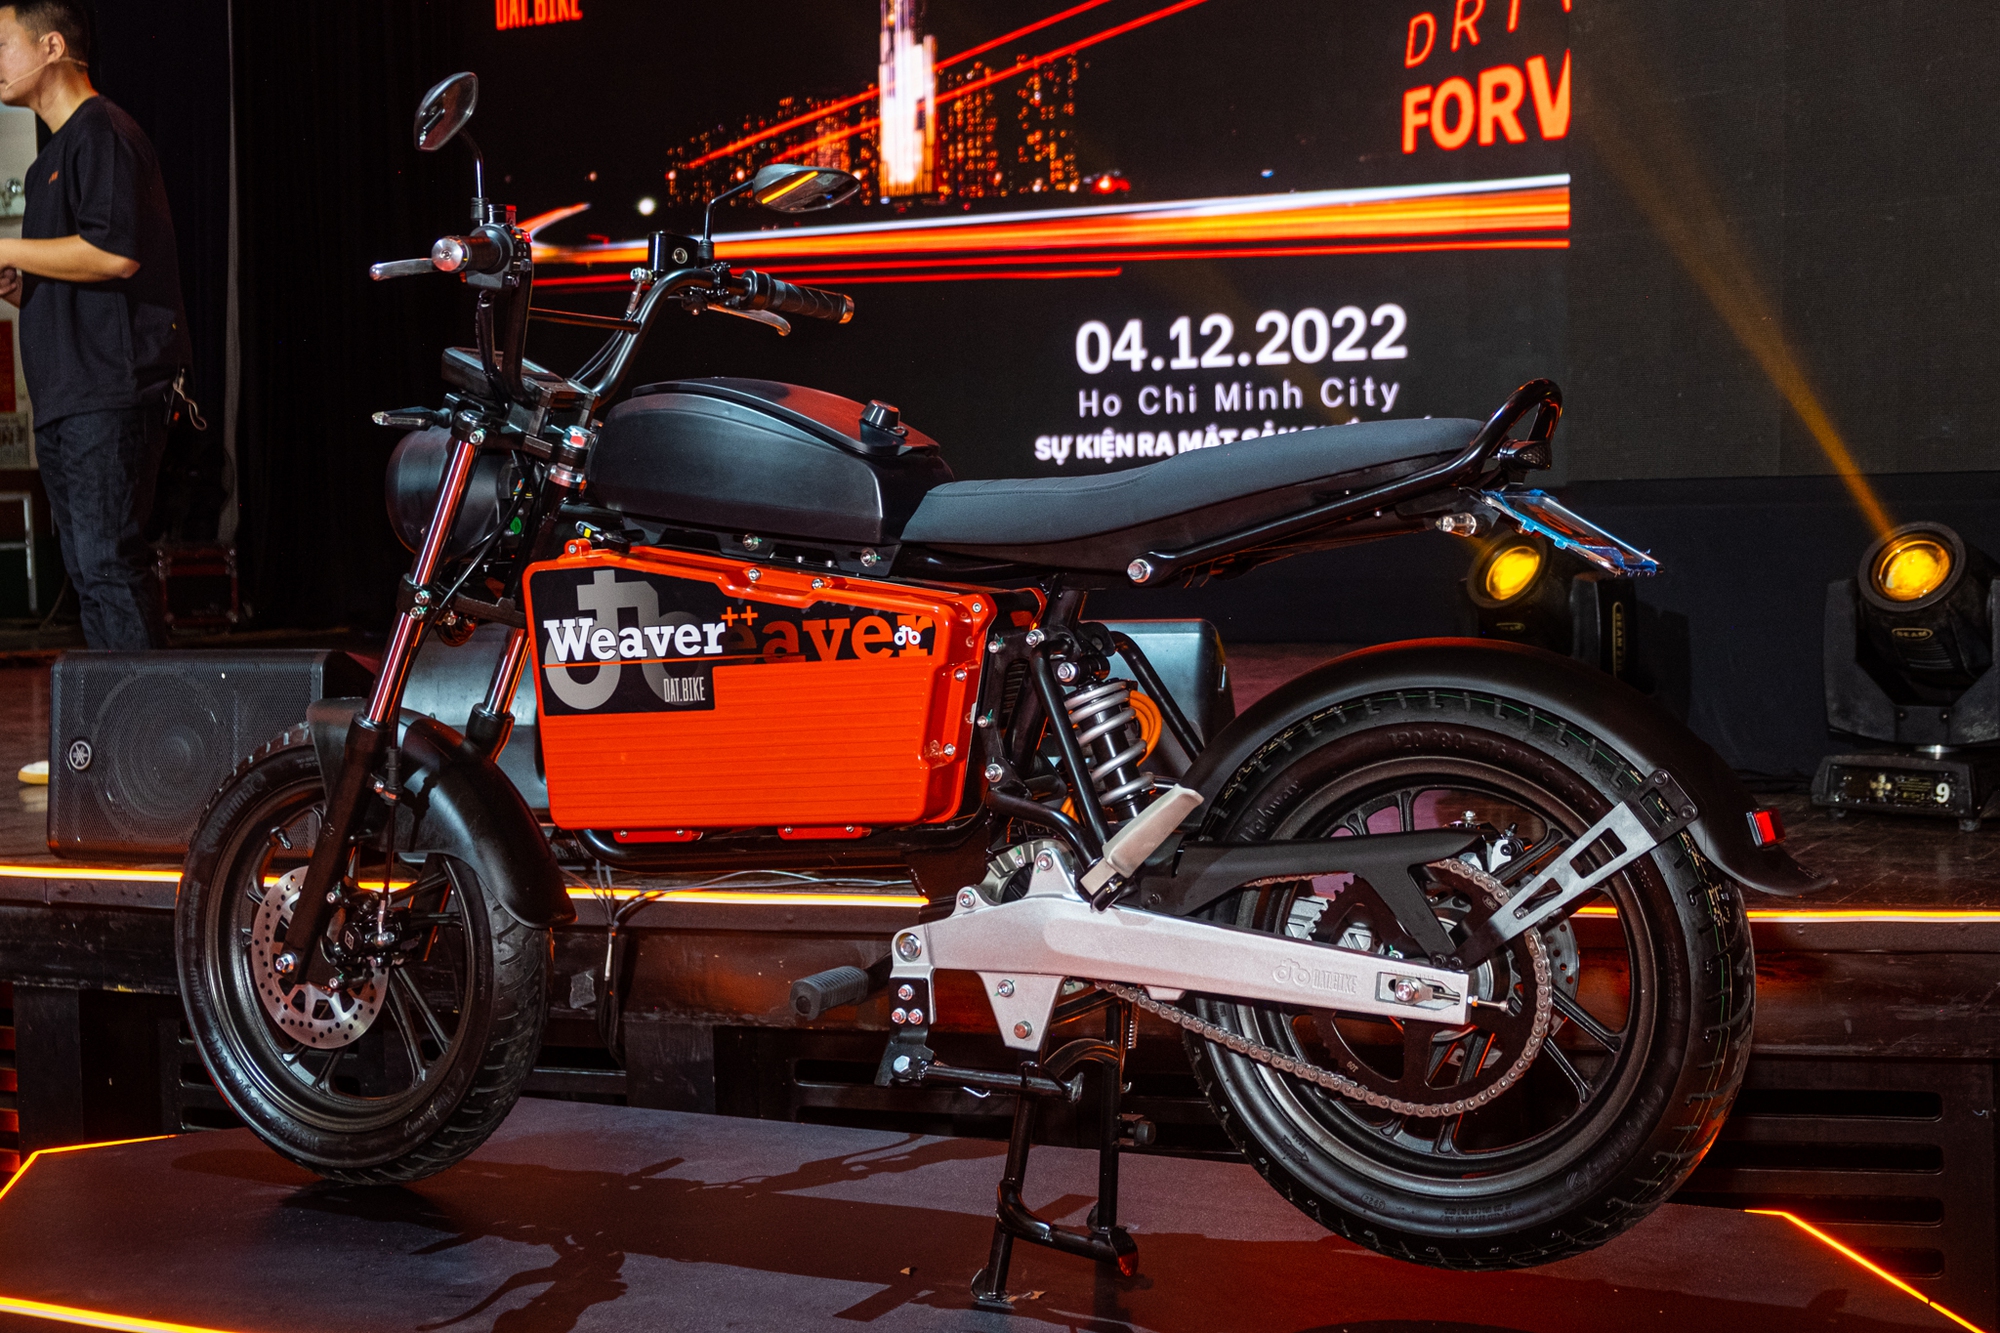 Ra mắt Dat Bike Weaver++: Giá 65,9 triệu đồng, dáng cổ điển, sạc nhanh chưa từng có tại Việt Nam - ảnh 13